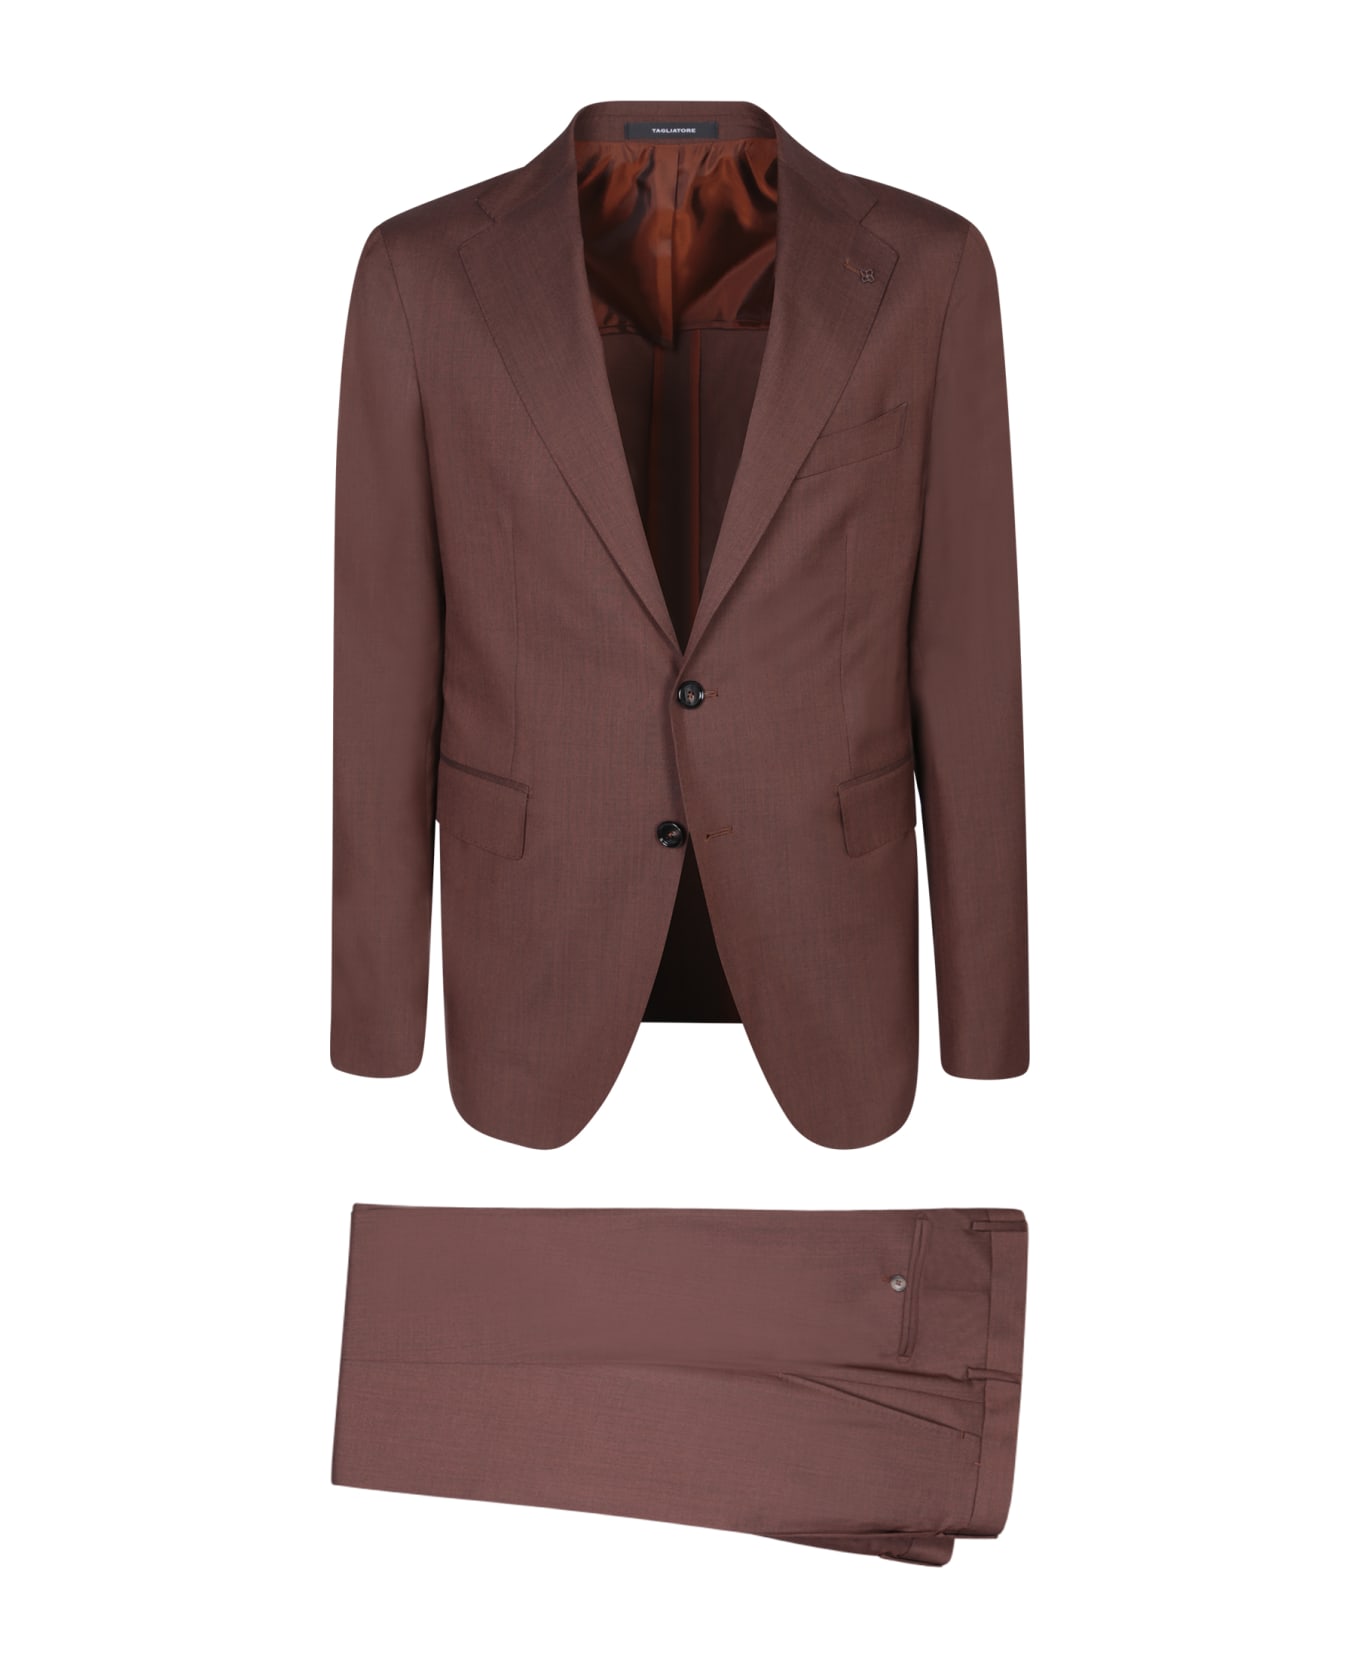 Tagliatore Vesuvio Brown Suit - Brown